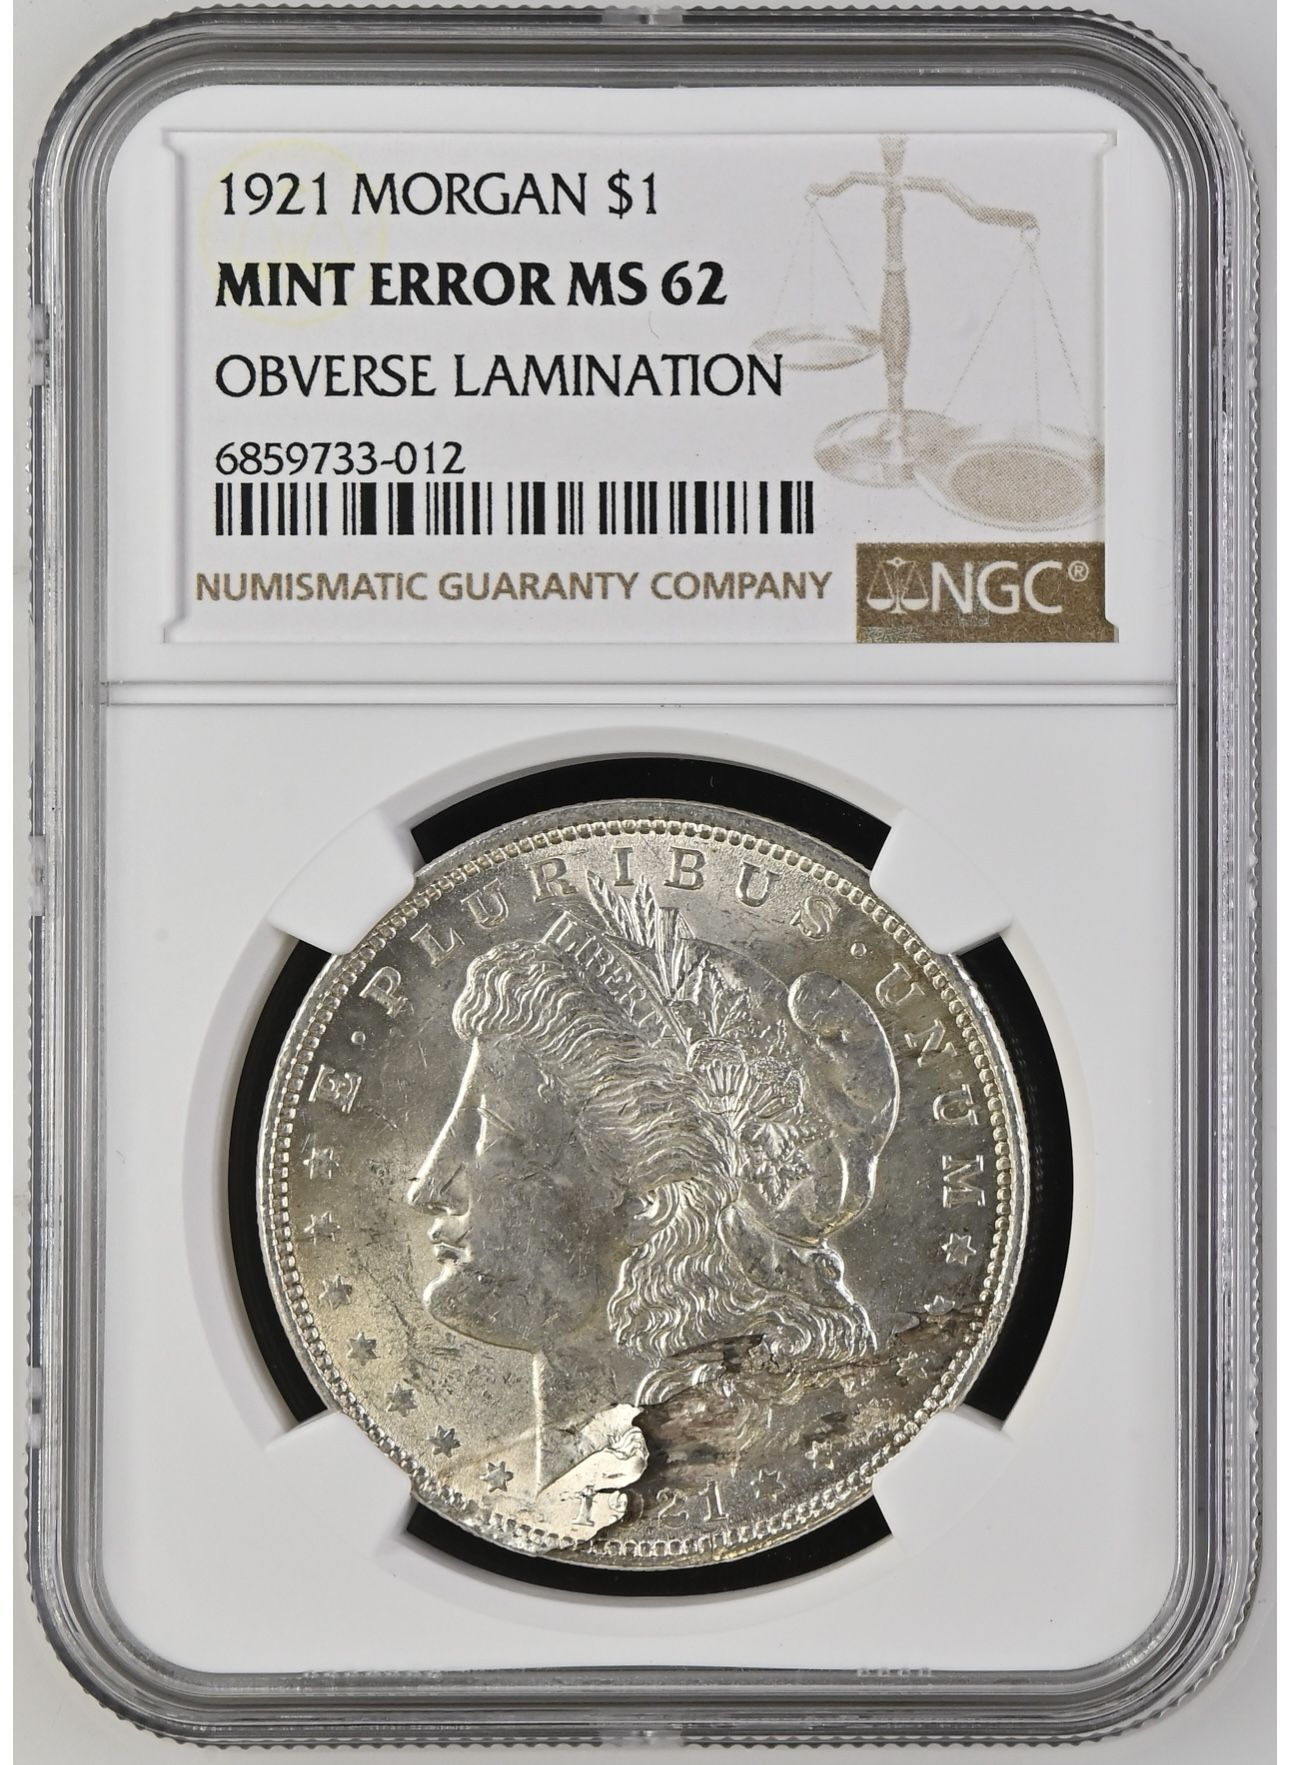 Mint Error Morgan Silver Dollar Coin